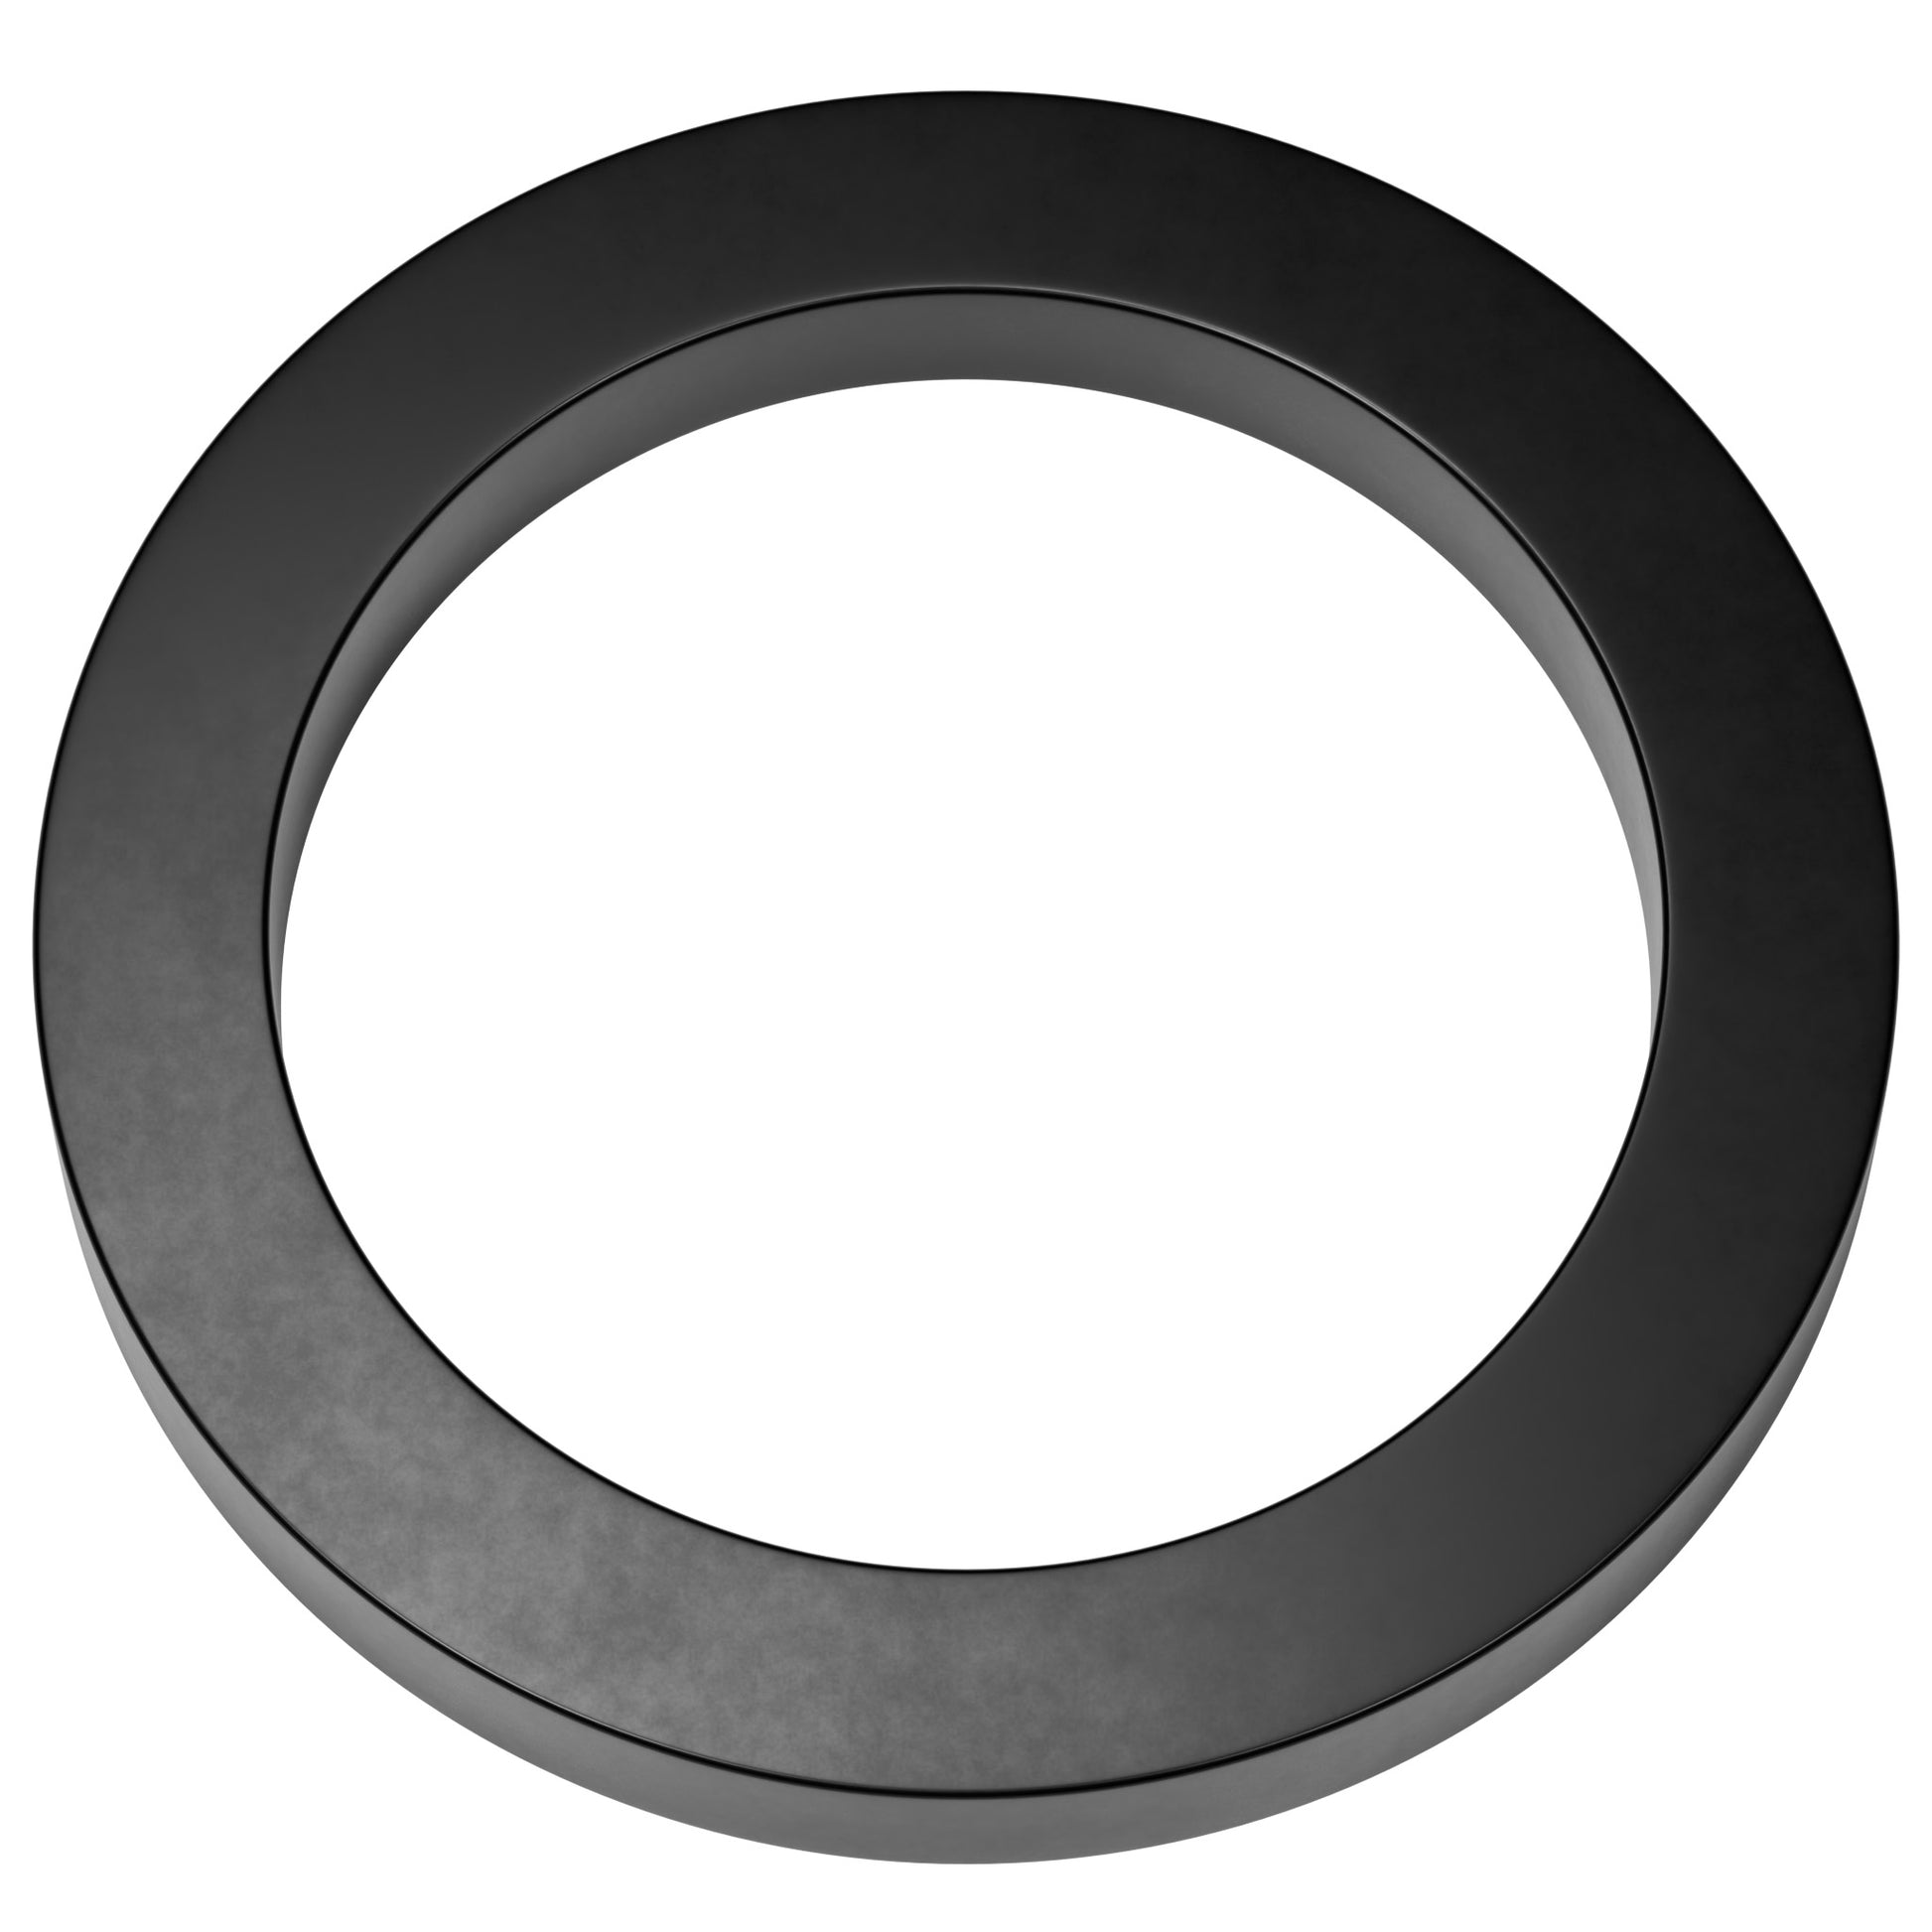 Filtech Air Filter Reducing Rubber Rings  Filtech   